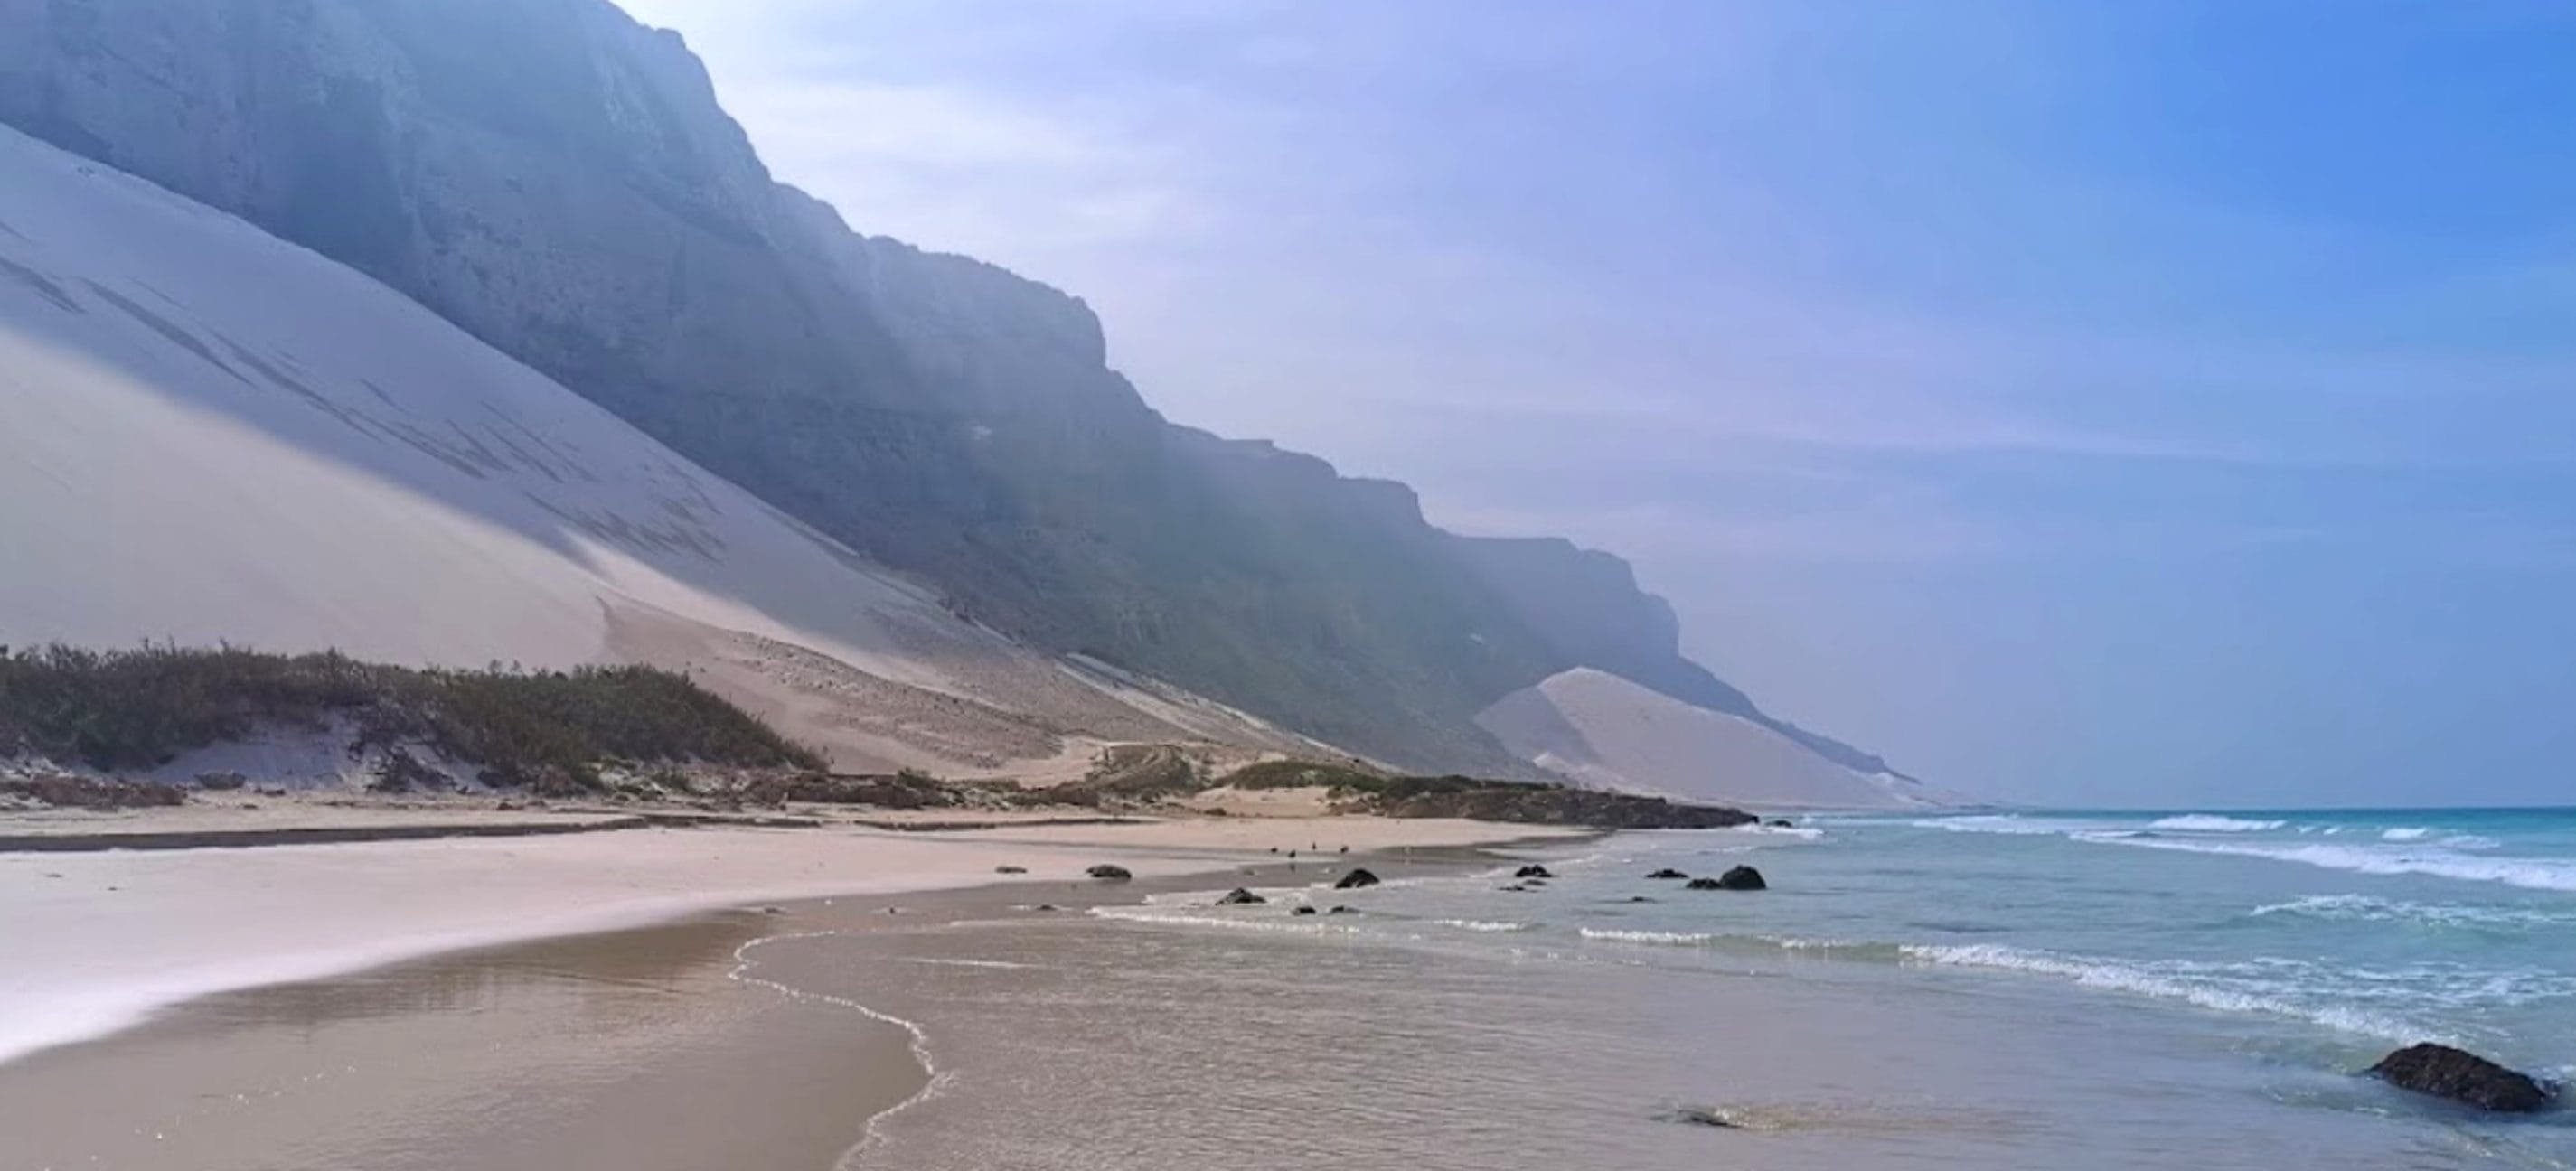 Đồi cát trắng ở Bãi biển Ahrer, Socotra